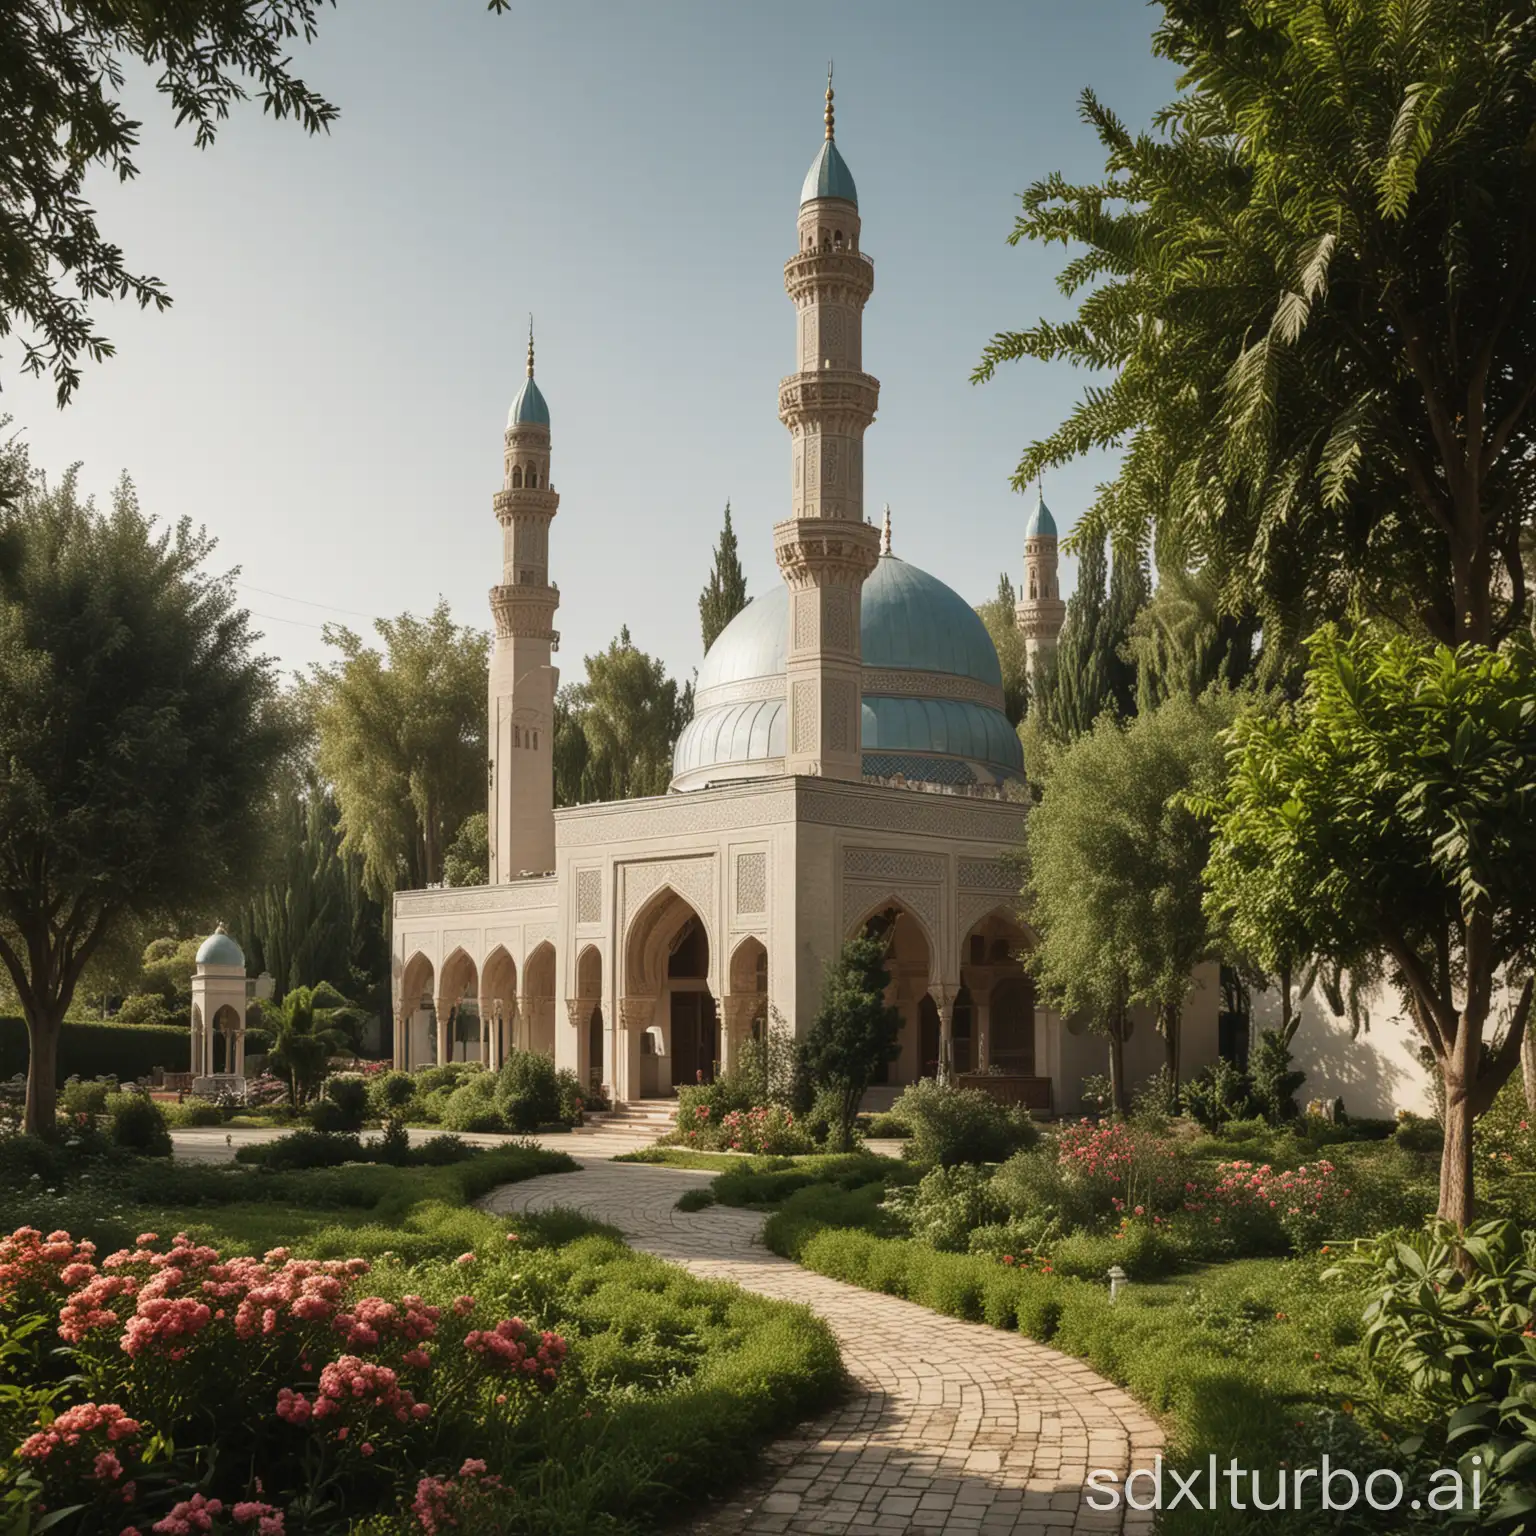 A mosque in the garden